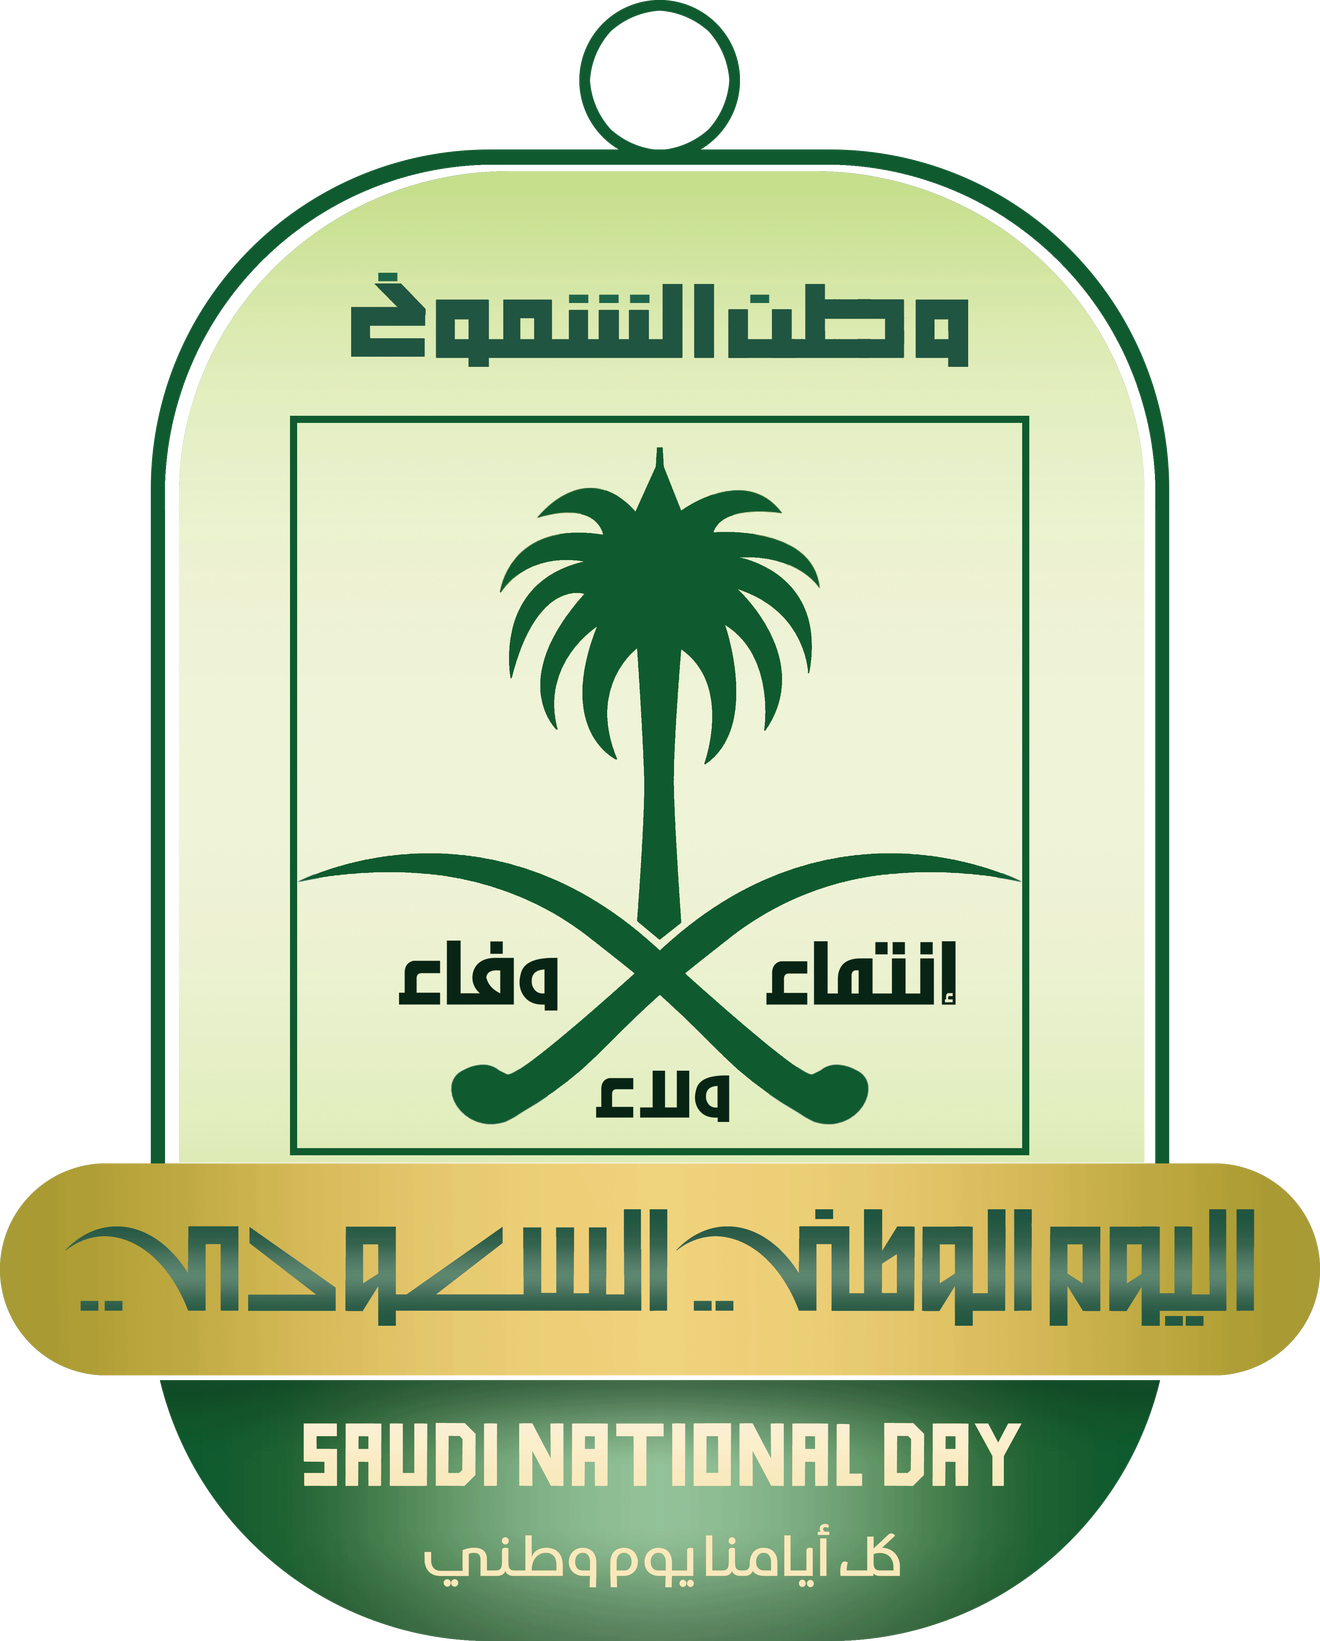 صور تصميم لليوم الوطني السعودي ٨٩ لعام ١٤٤١